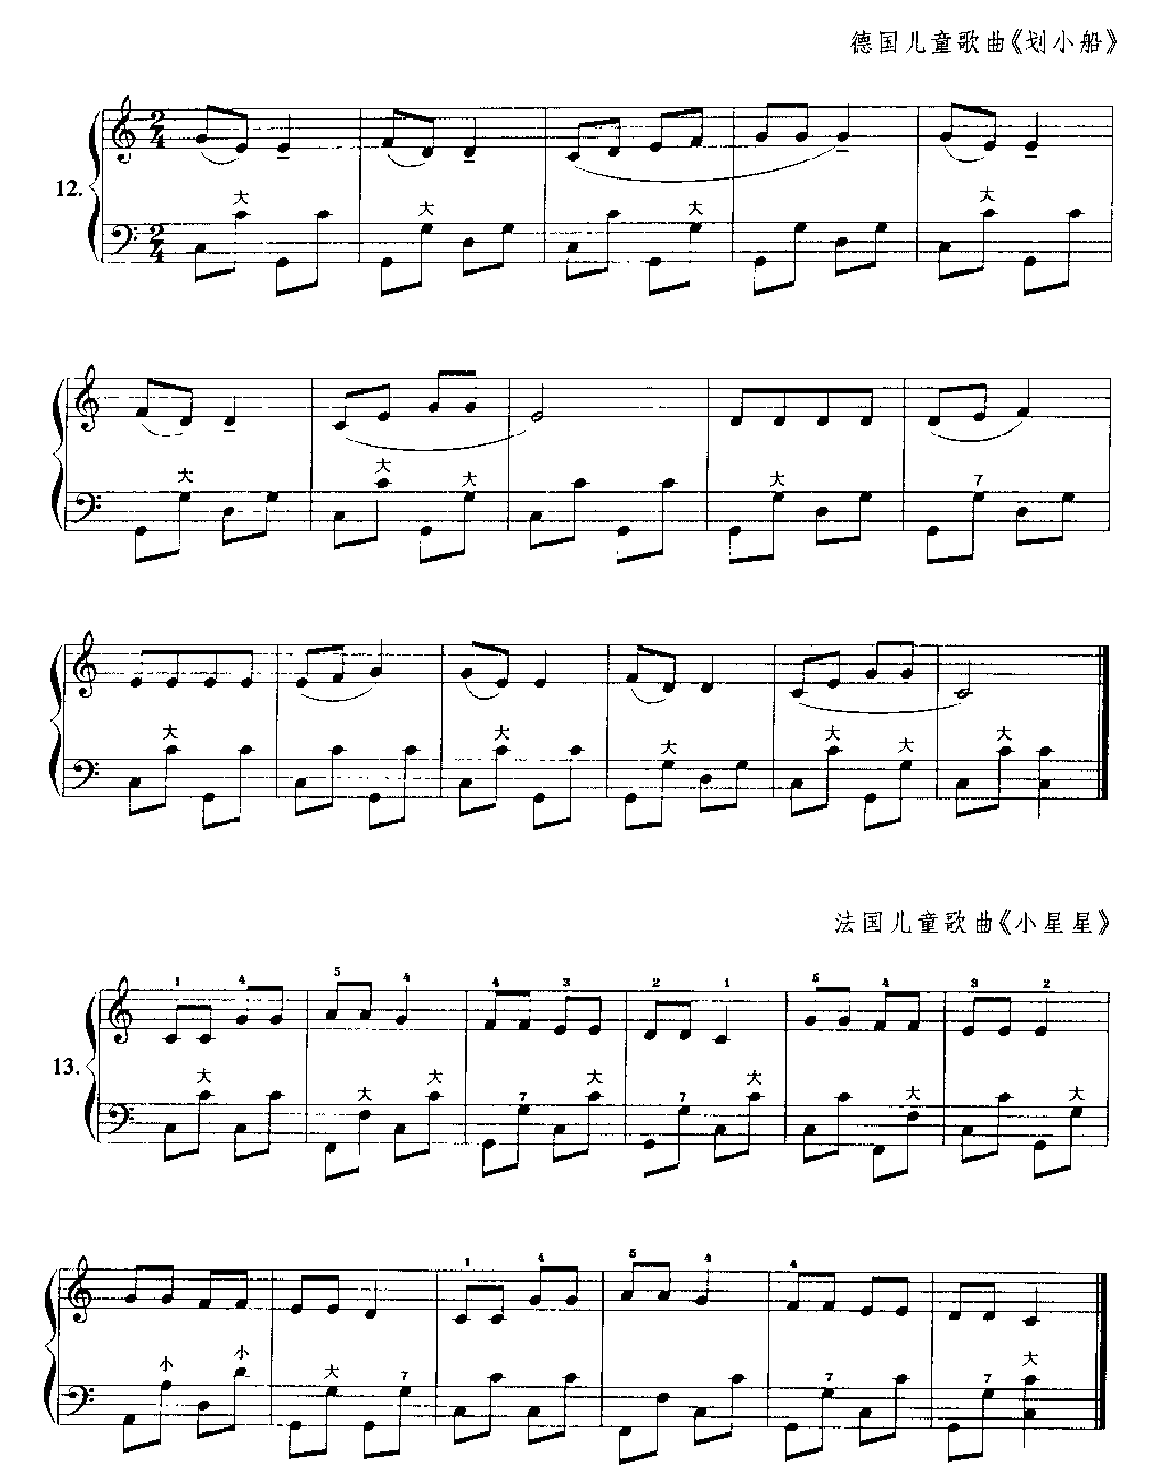 手风琴C大调音阶在键钮上的练习7